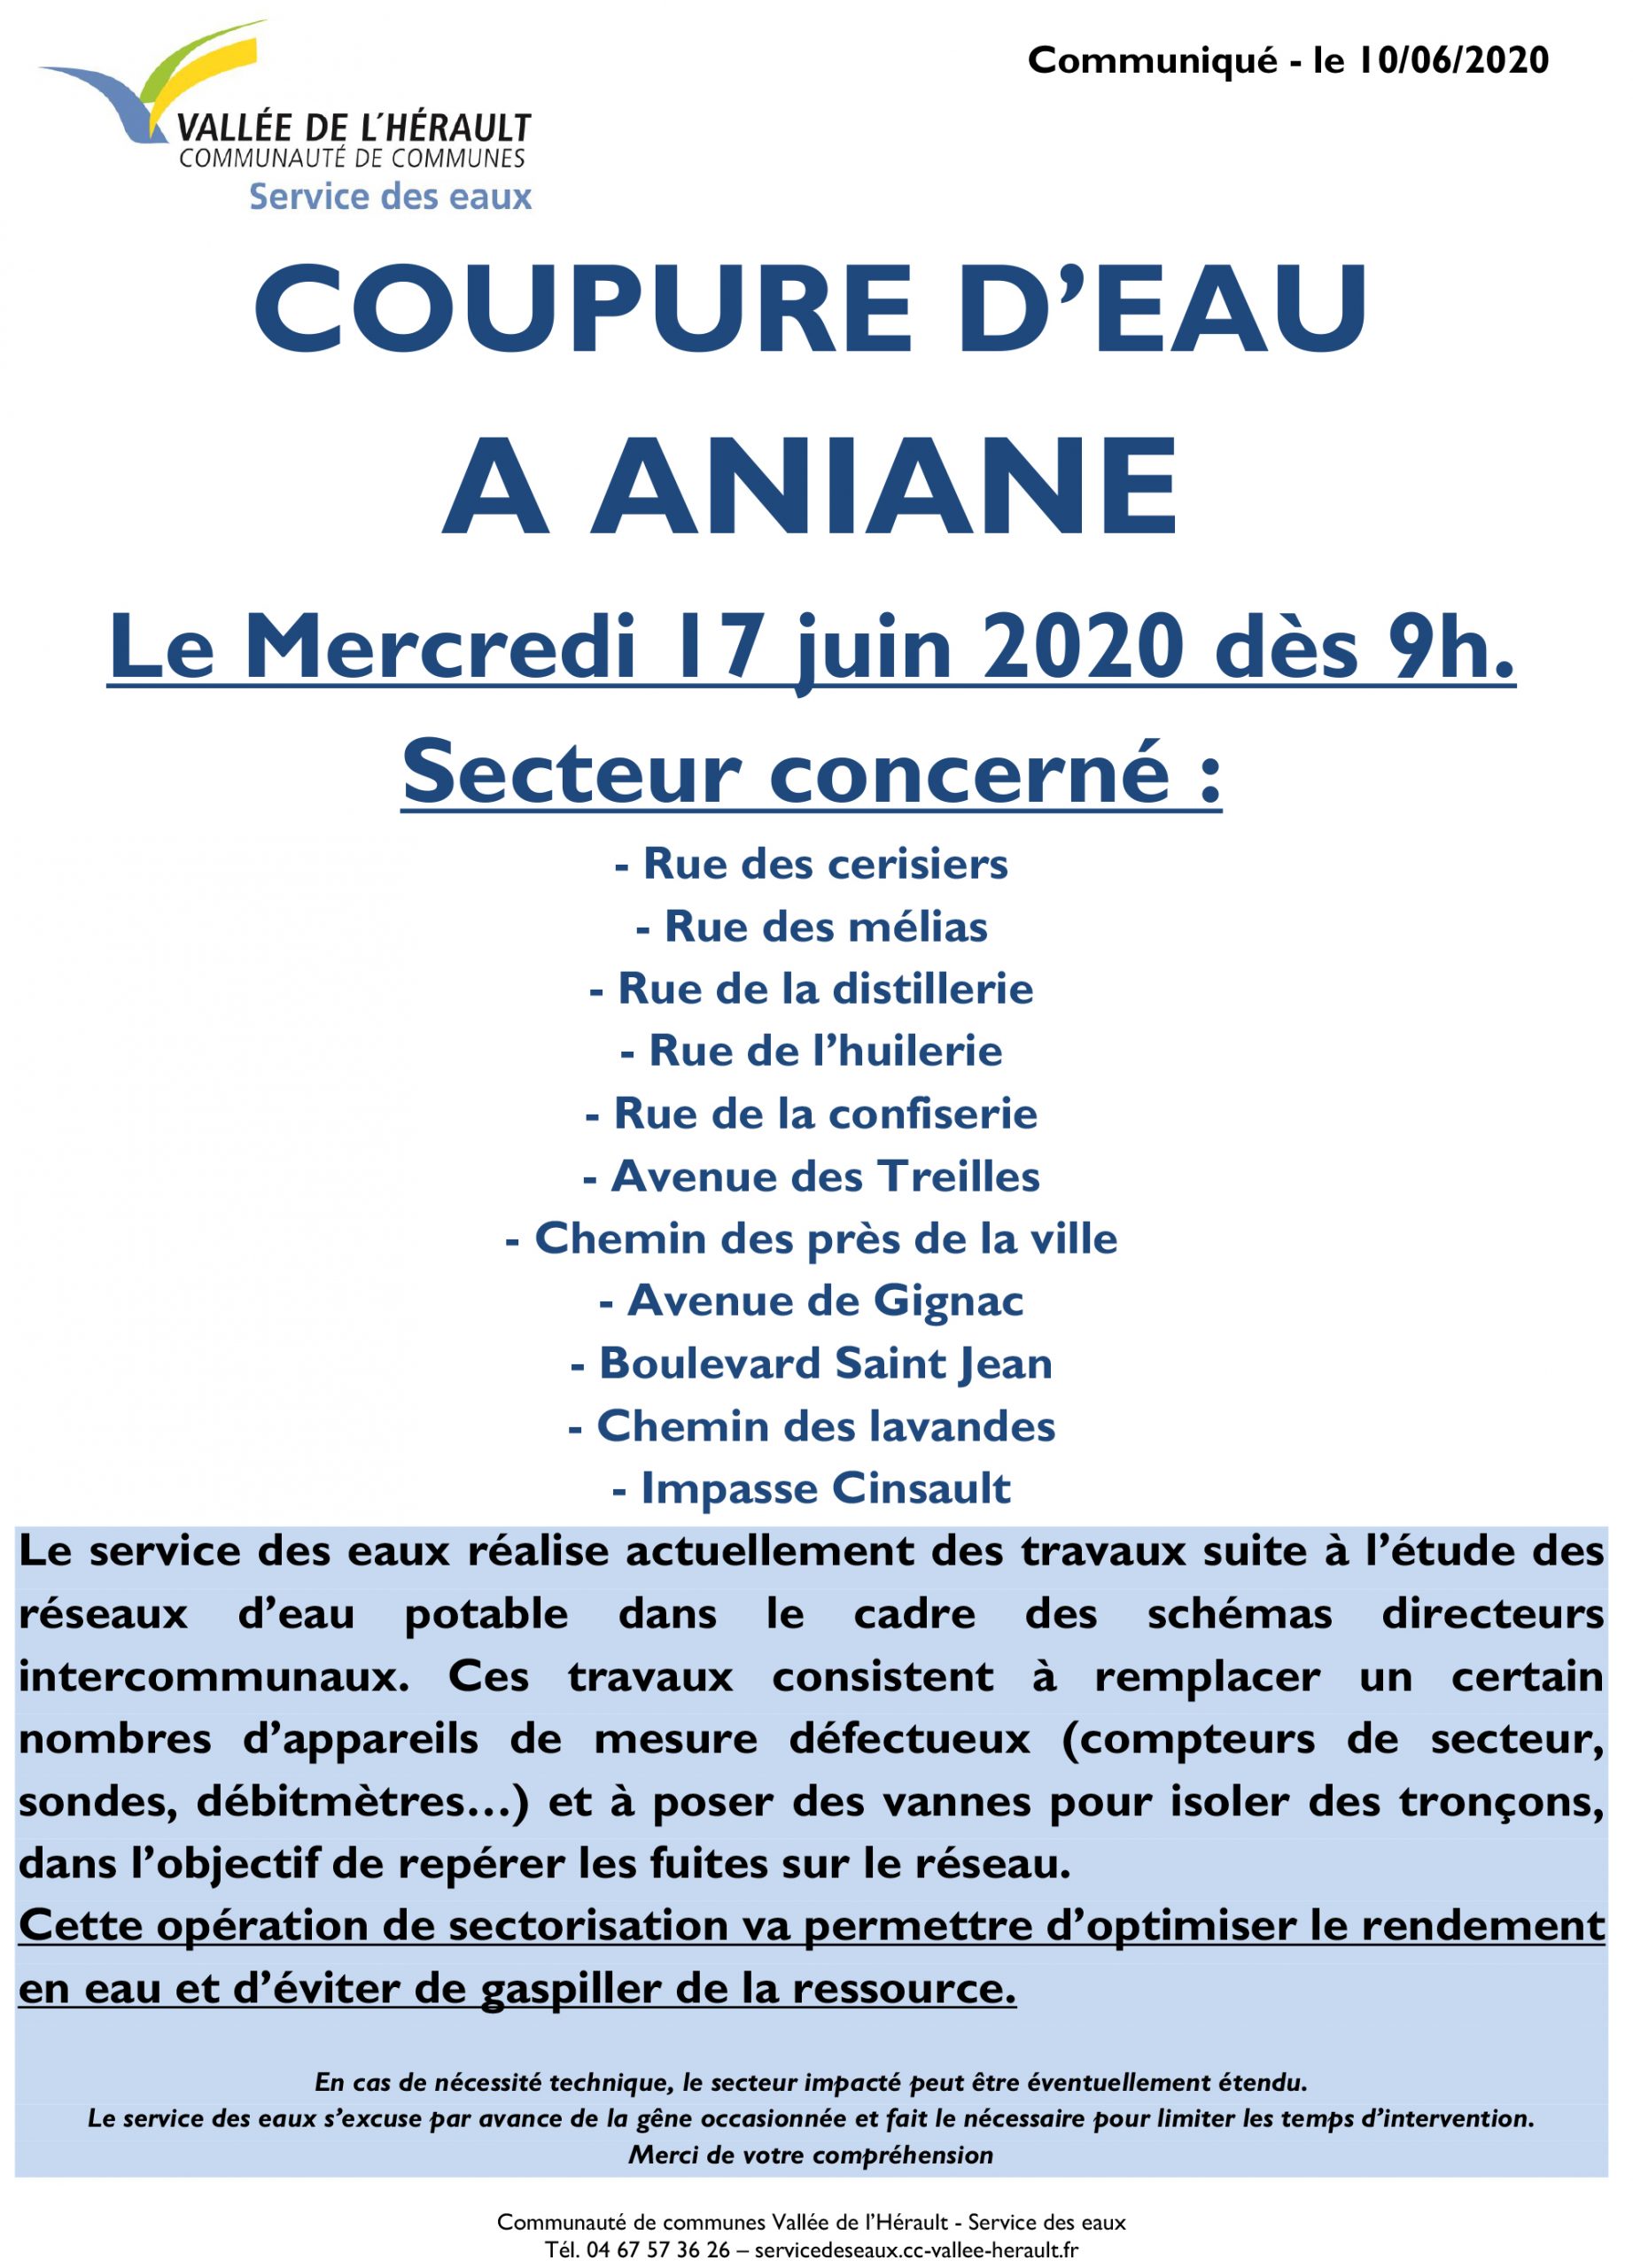 Communiqué Coupure eau 17 06 2020 Aniane